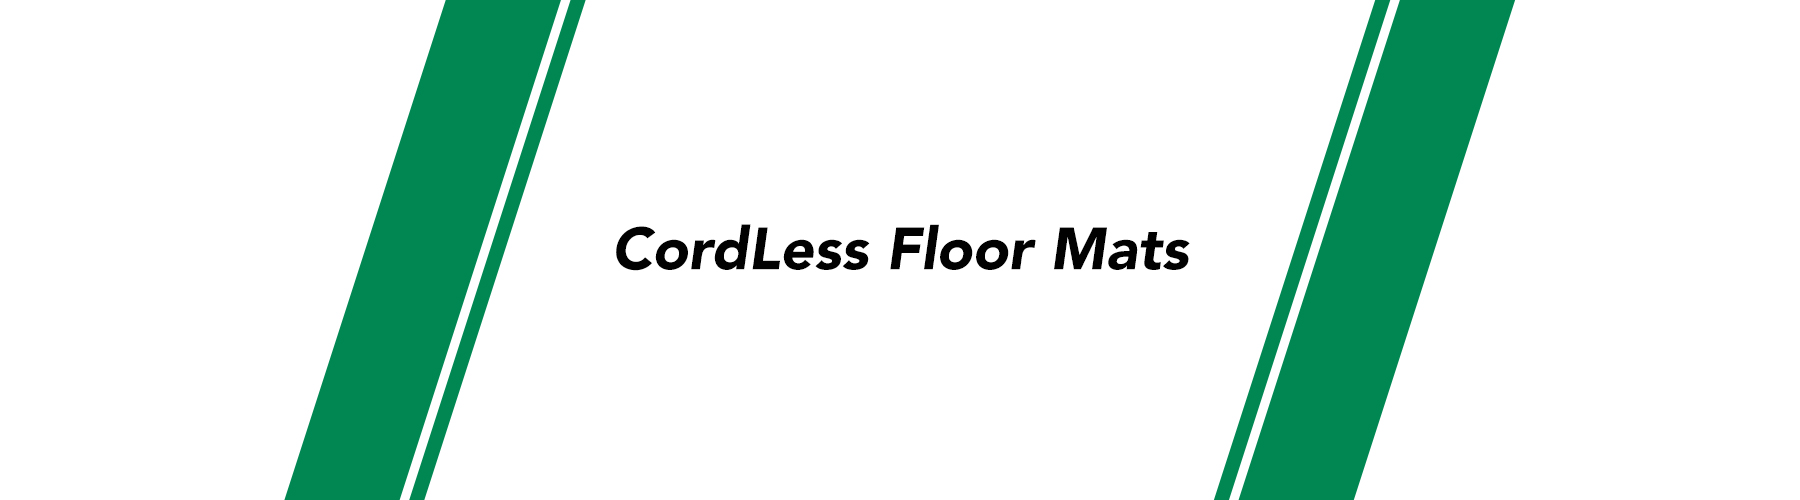 CORDLESS LONG FLOOR MAT 24 x 48